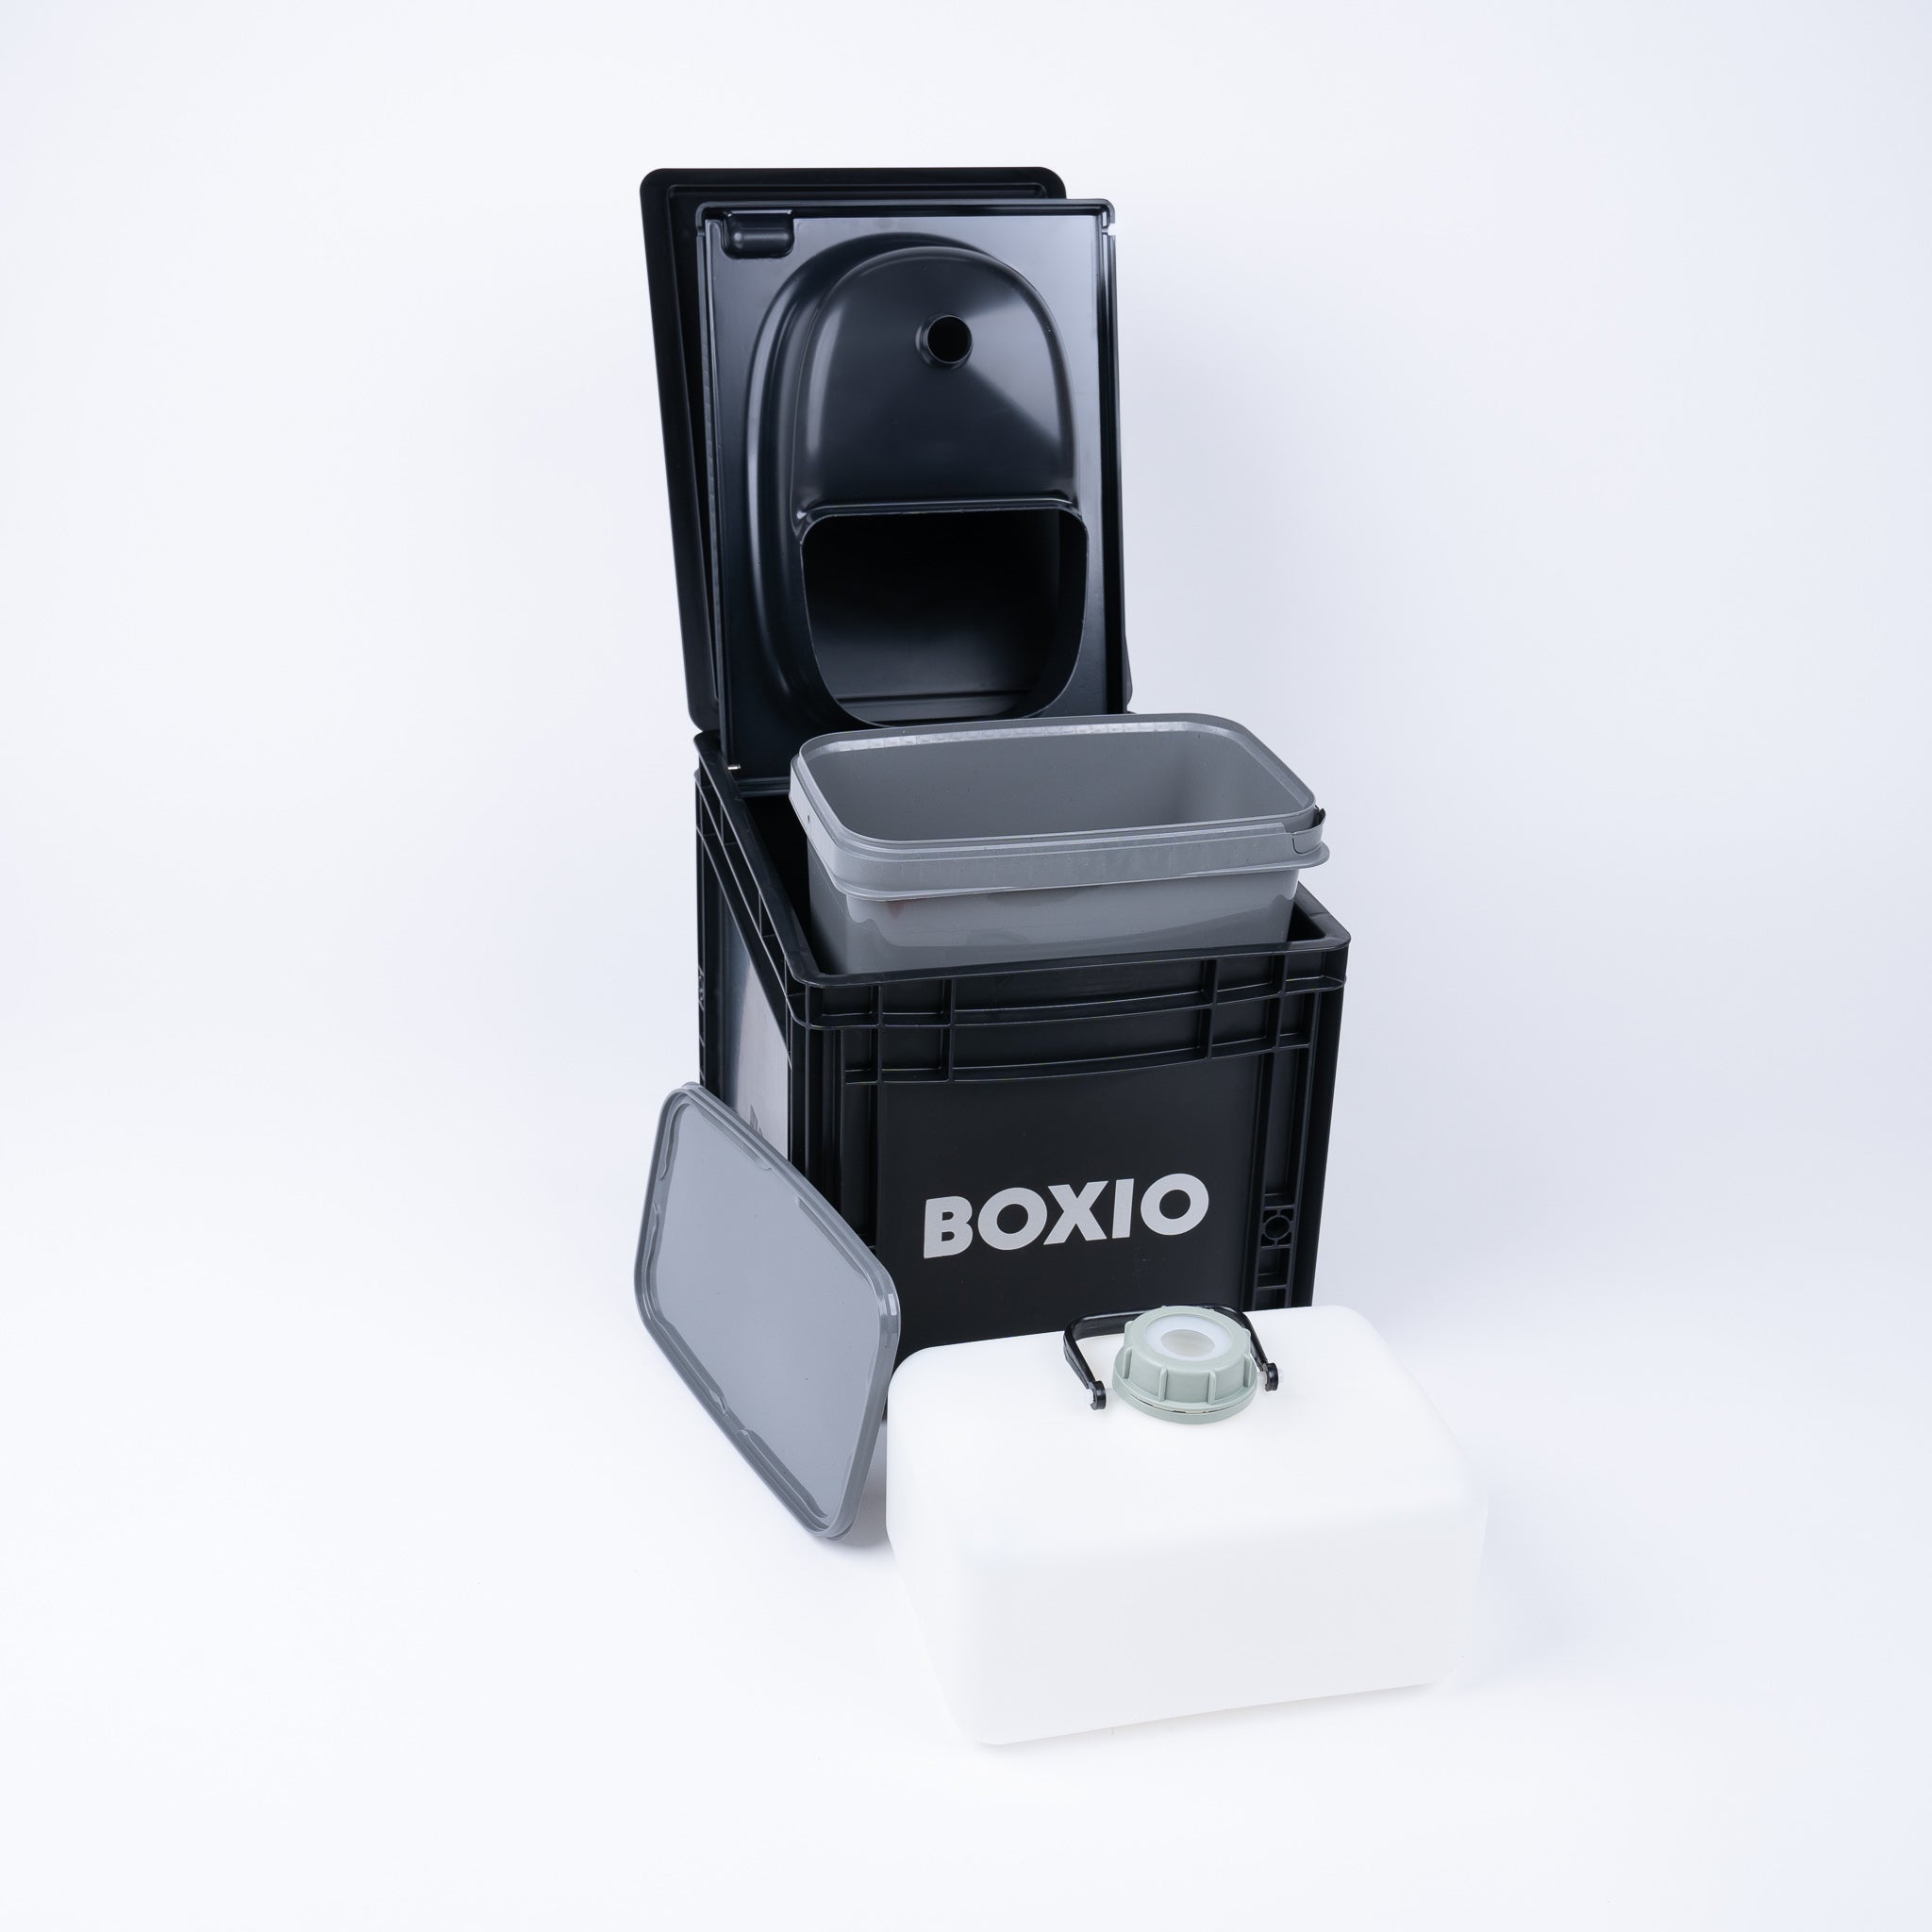 BOXIO - SANITAIR: Complete set met urineverwijderend toilet, mobiele wastafel en accessoires